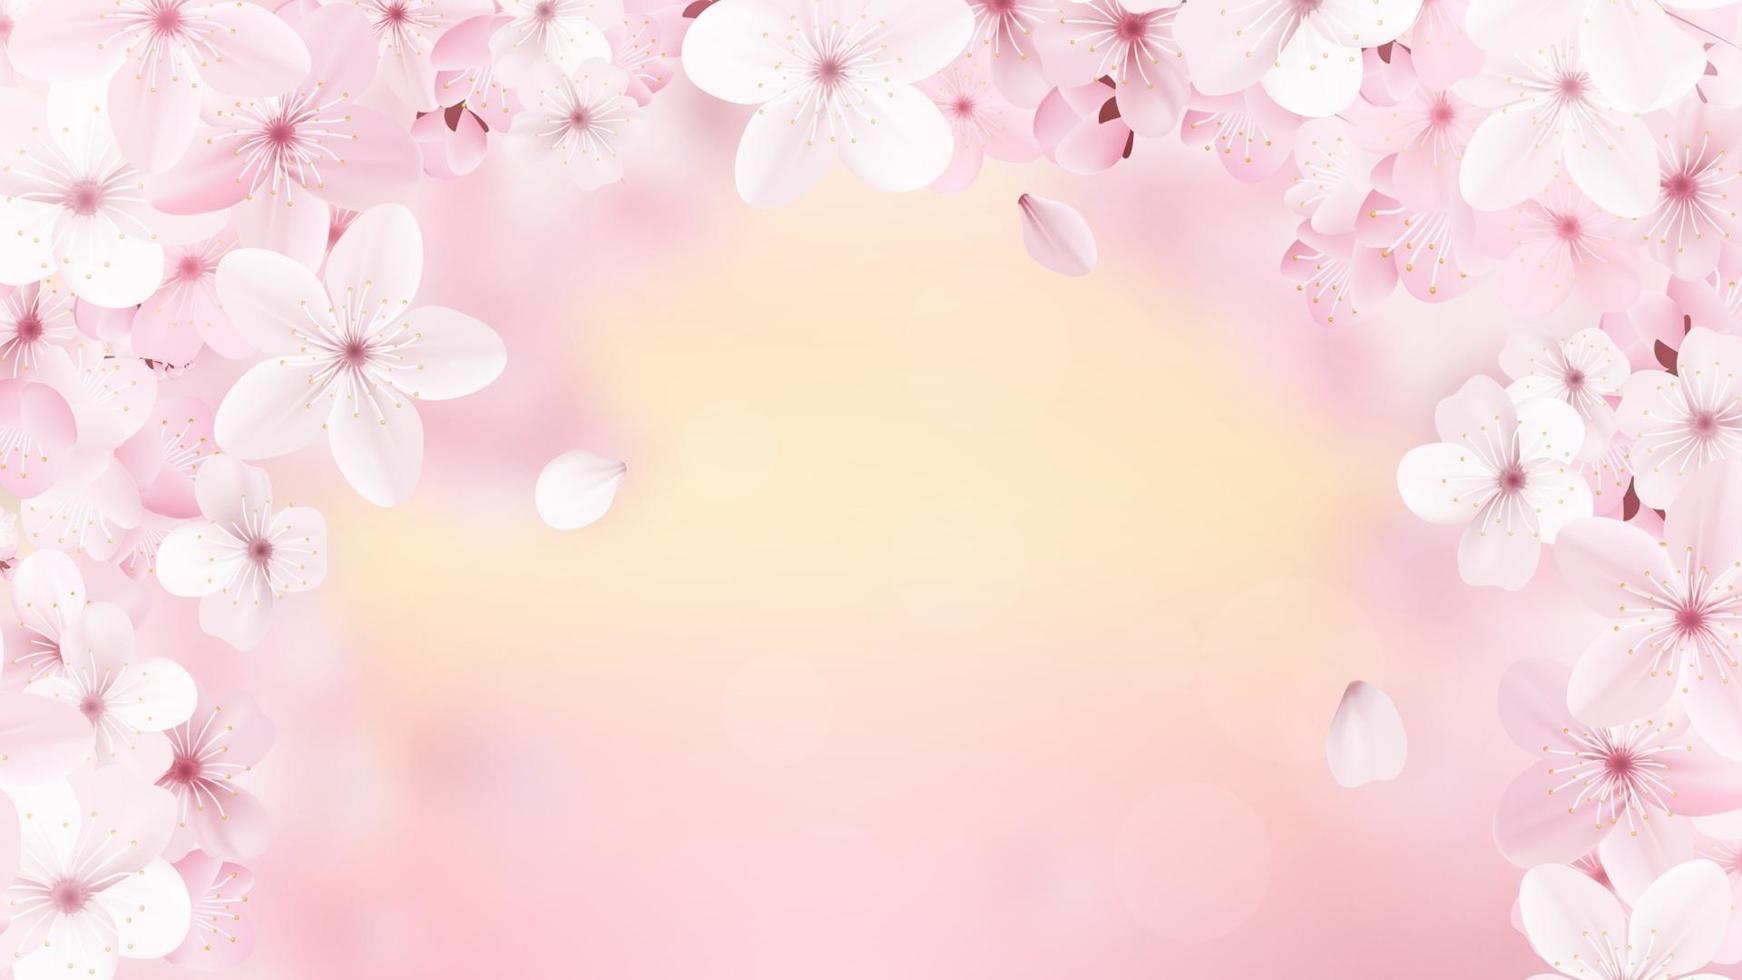 bellissima stampa con fiori di sakura rosa chiaro in fiore vettore